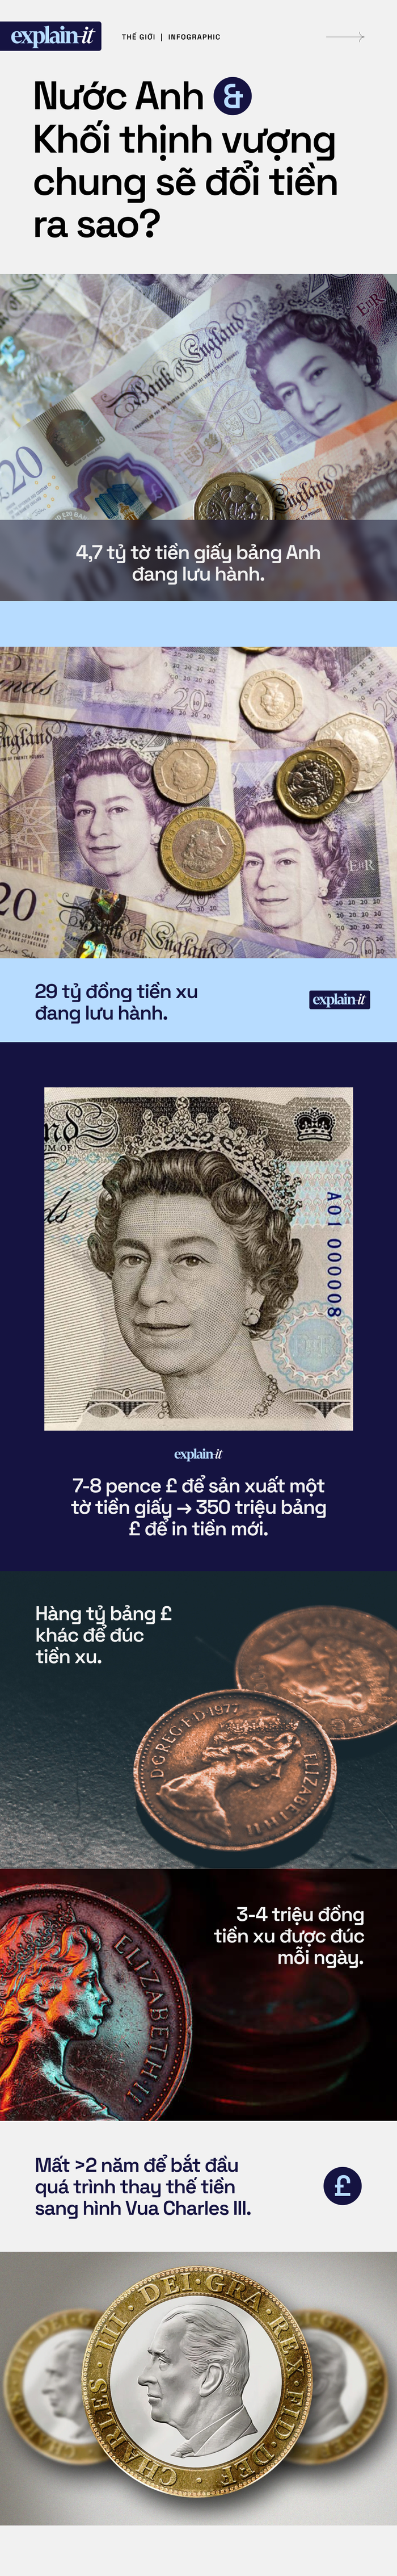 Sau khi Nữ hoàng băng hà, nước Anh và Khối thịnh vượng chung sẽ đổi tiền ra sao? - Ảnh 4.